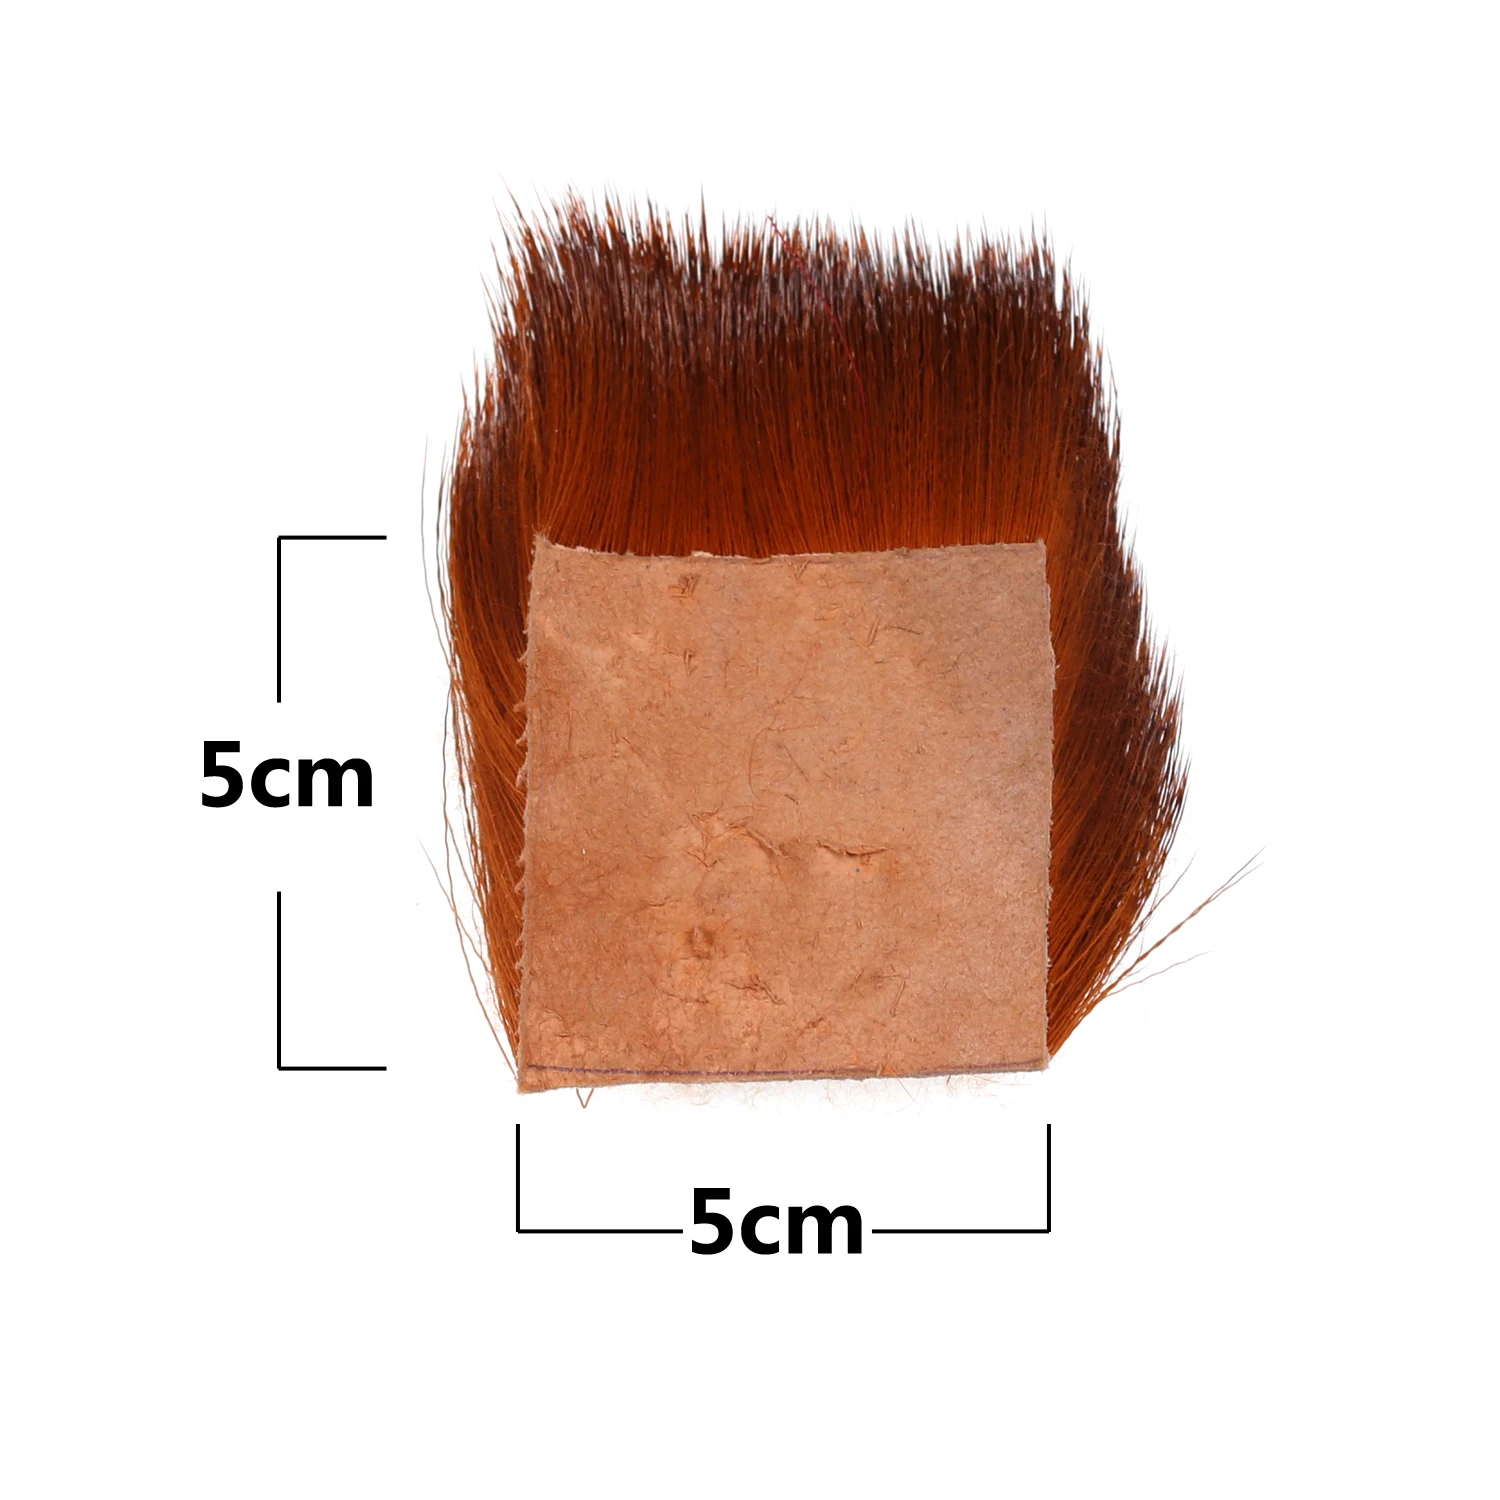 Wifreo 1 шт. натуральные волосы оленя патч для завязывания мух сухие мухи Caddis крылья и тела спиннинг басы жуки материалы для изготовления 5*5 см